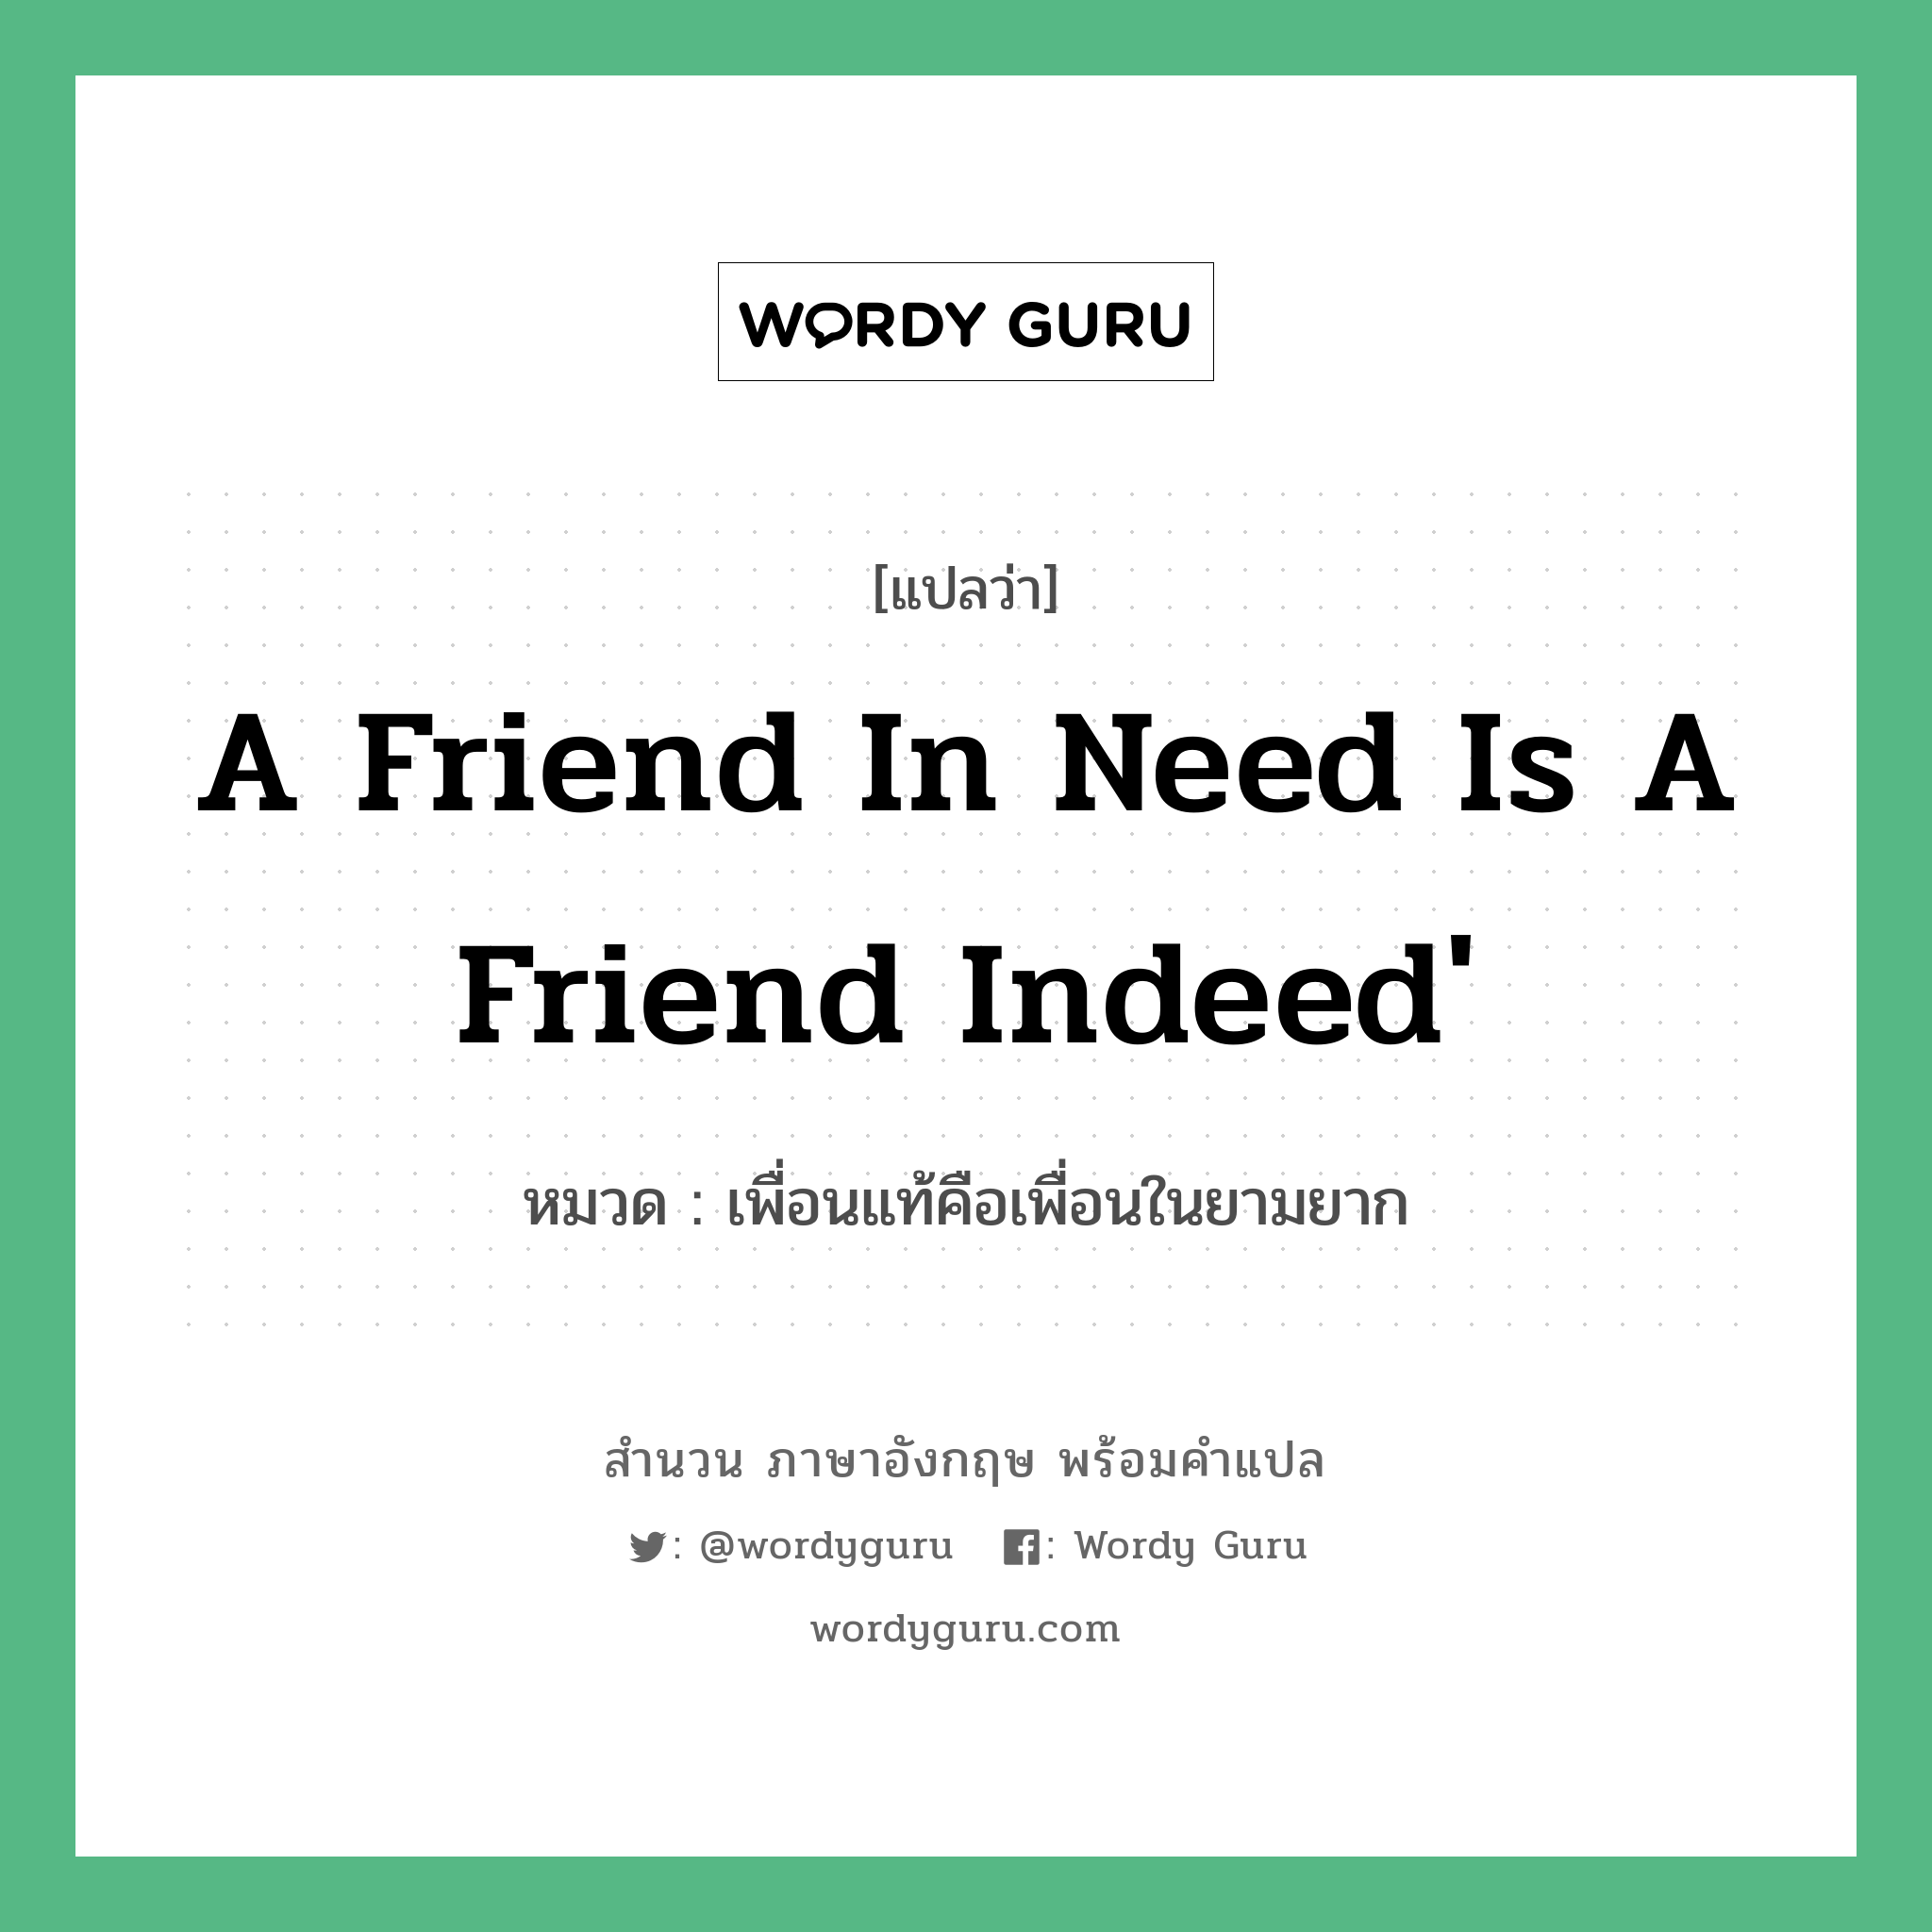 เพื่อนแท้คือเพื่อนในยามยาก ภาษาอังกฤษ?, สำนวนภาษาอังกฤษ เพื่อนแท้คือเพื่อนในยามยาก แปลว่า เพื่อนแท้คือเพื่อนในยามยาก หมวด A friend in need is a friend indeed' คำสุภาษิต ภาษาอังกฤษ หมวด คำสุภาษิต ภาษาอังกฤษ